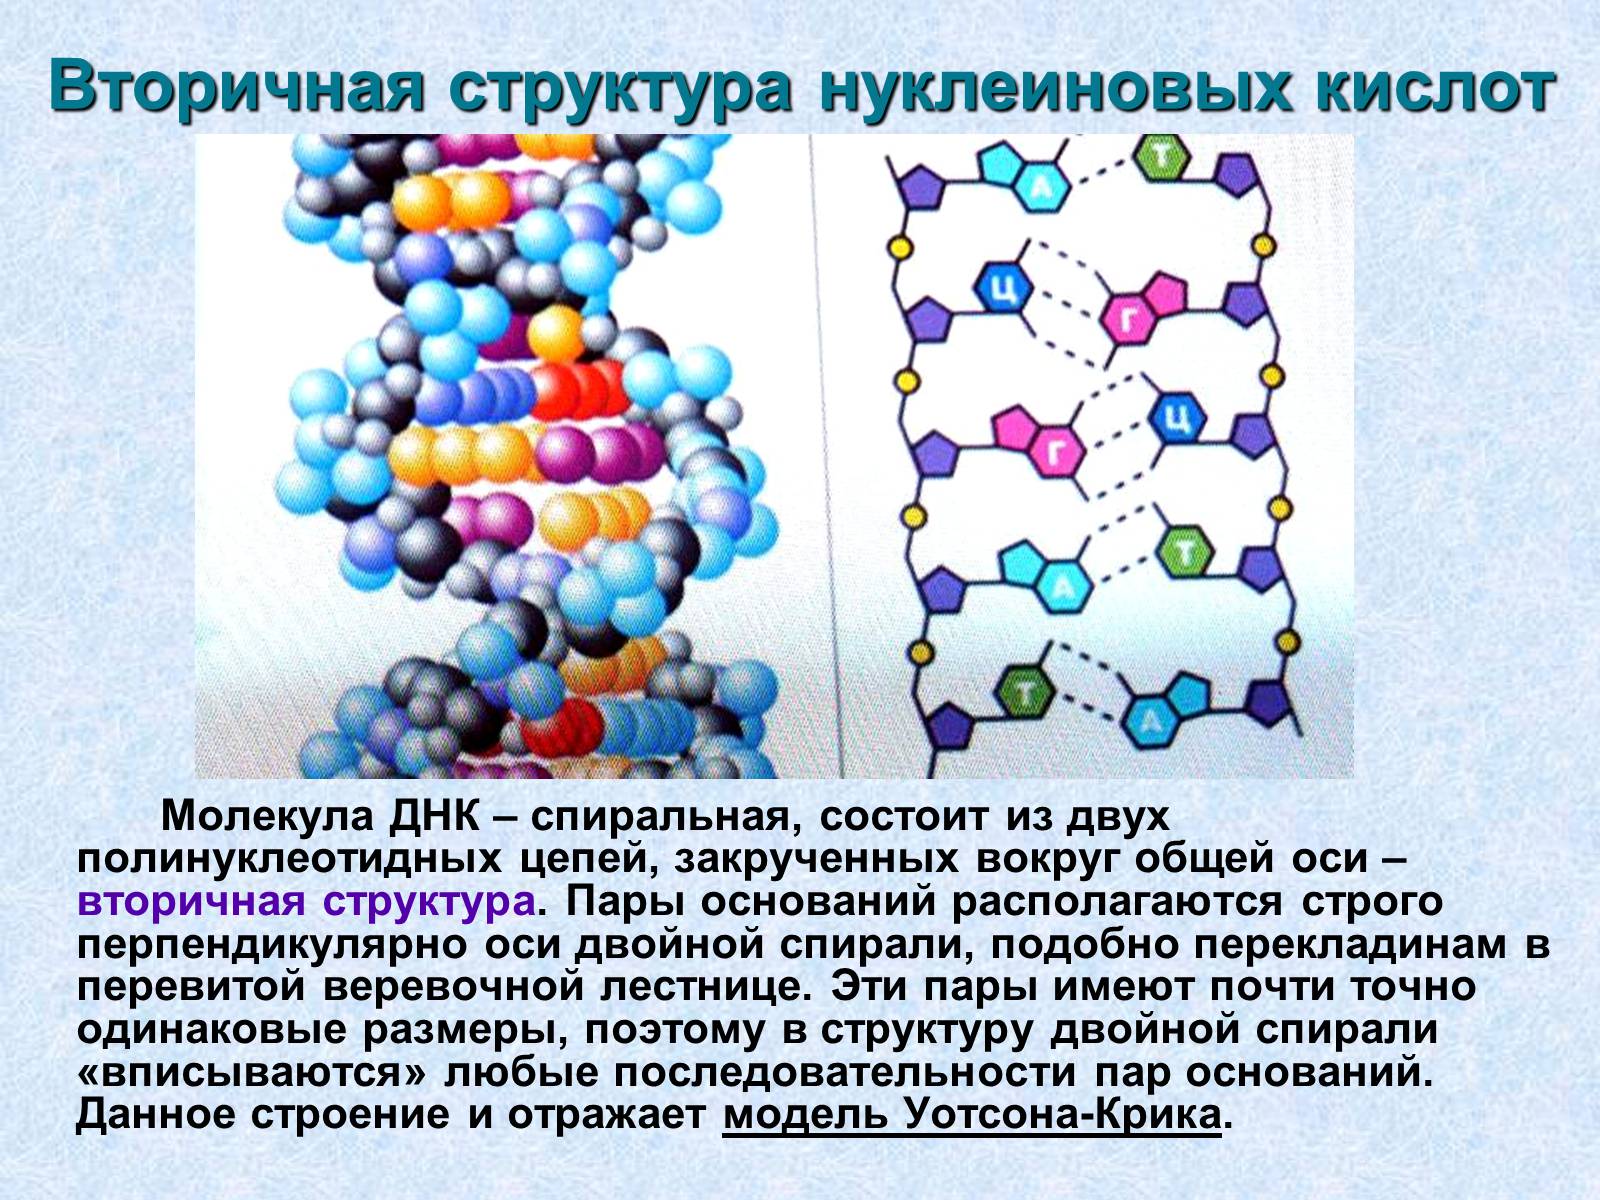 Нуклеиновые кислоты и жизнь. Первичная вторичная и третичная структура нуклеиновых кислот. Первичная и вторичная структура нуклеиновых кислот. Первичная структура нуклеиновых кислот рисунок. Первичная и вторичная структура нуклеиновых кислот связи.